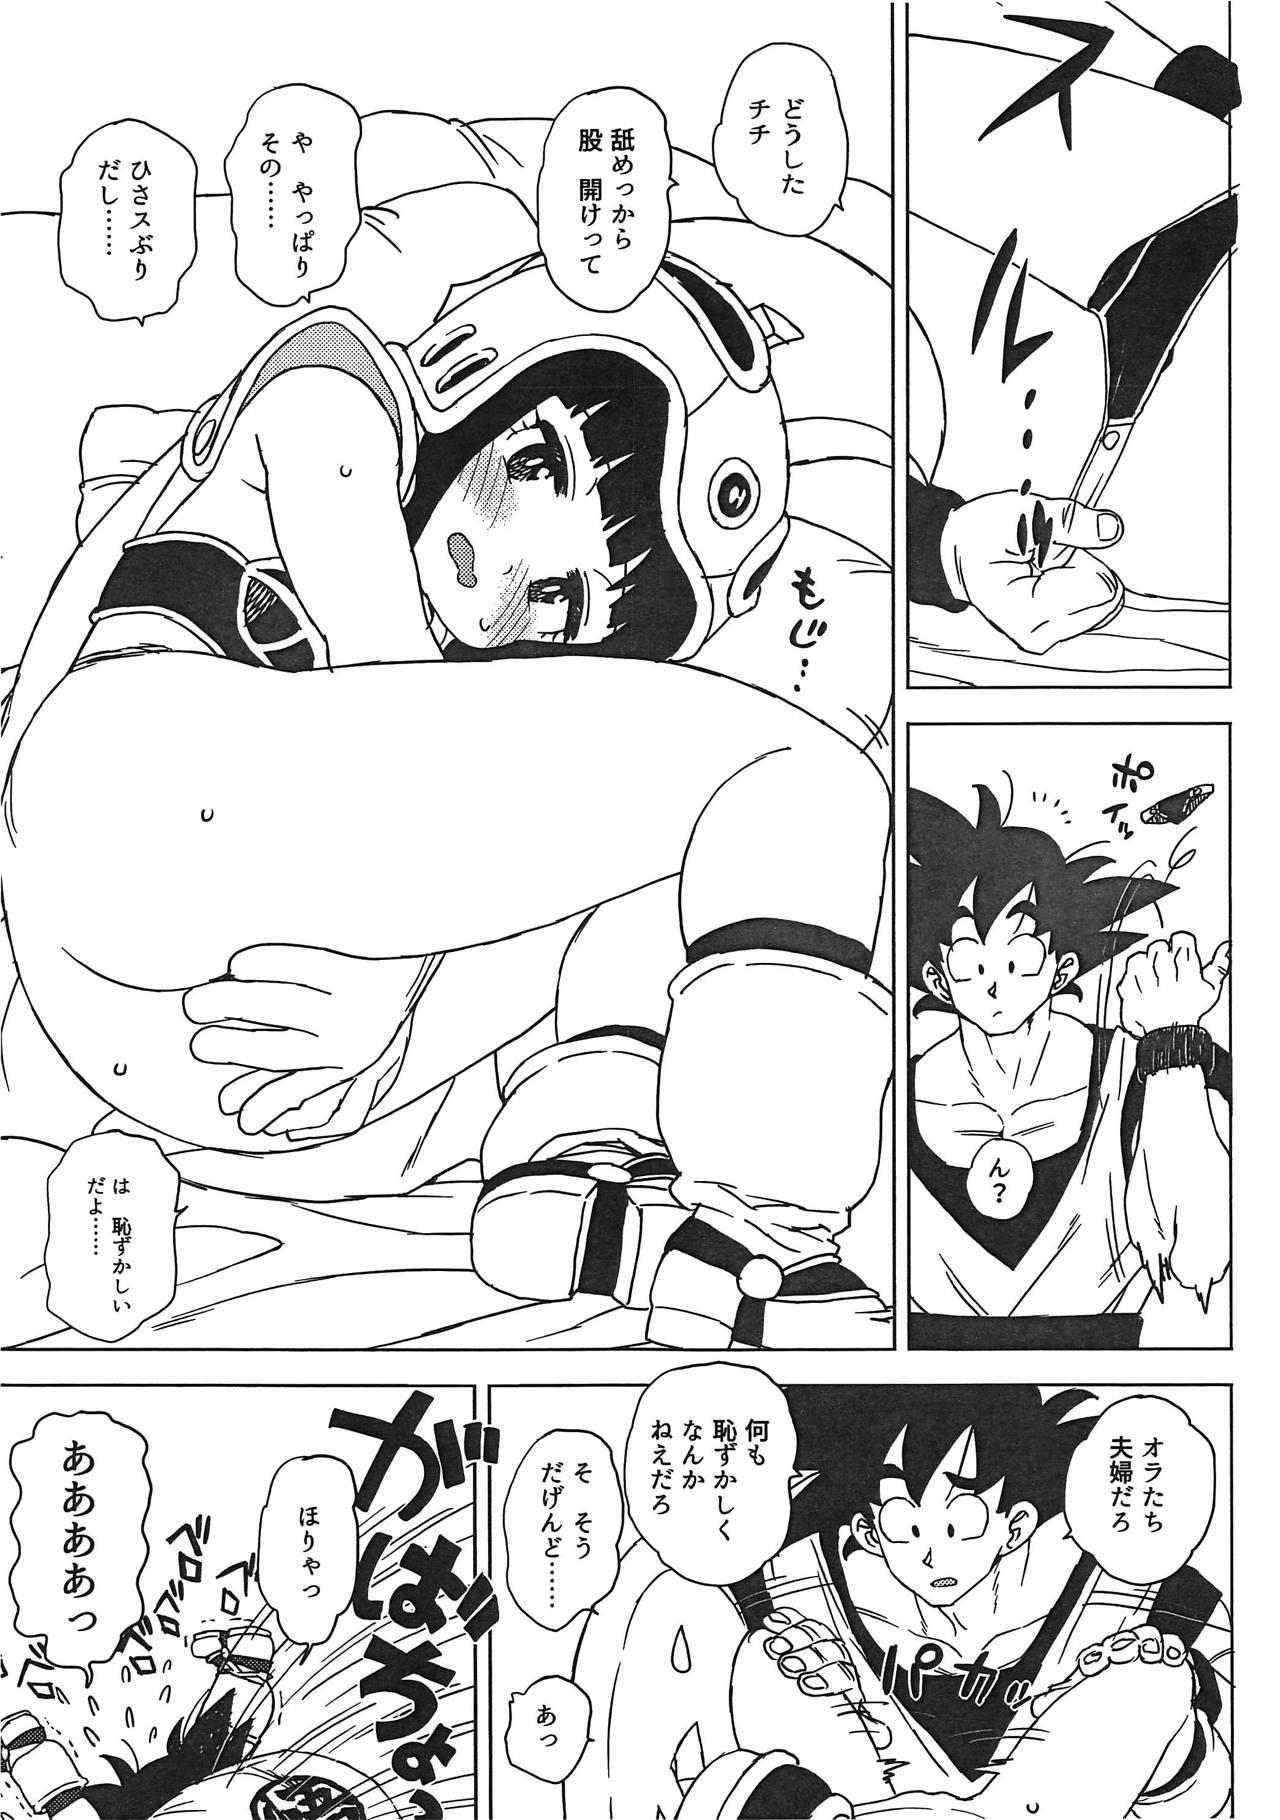 Bukkake Boys GOKU CHICHI - Dragon ball Gostosas - Page 8